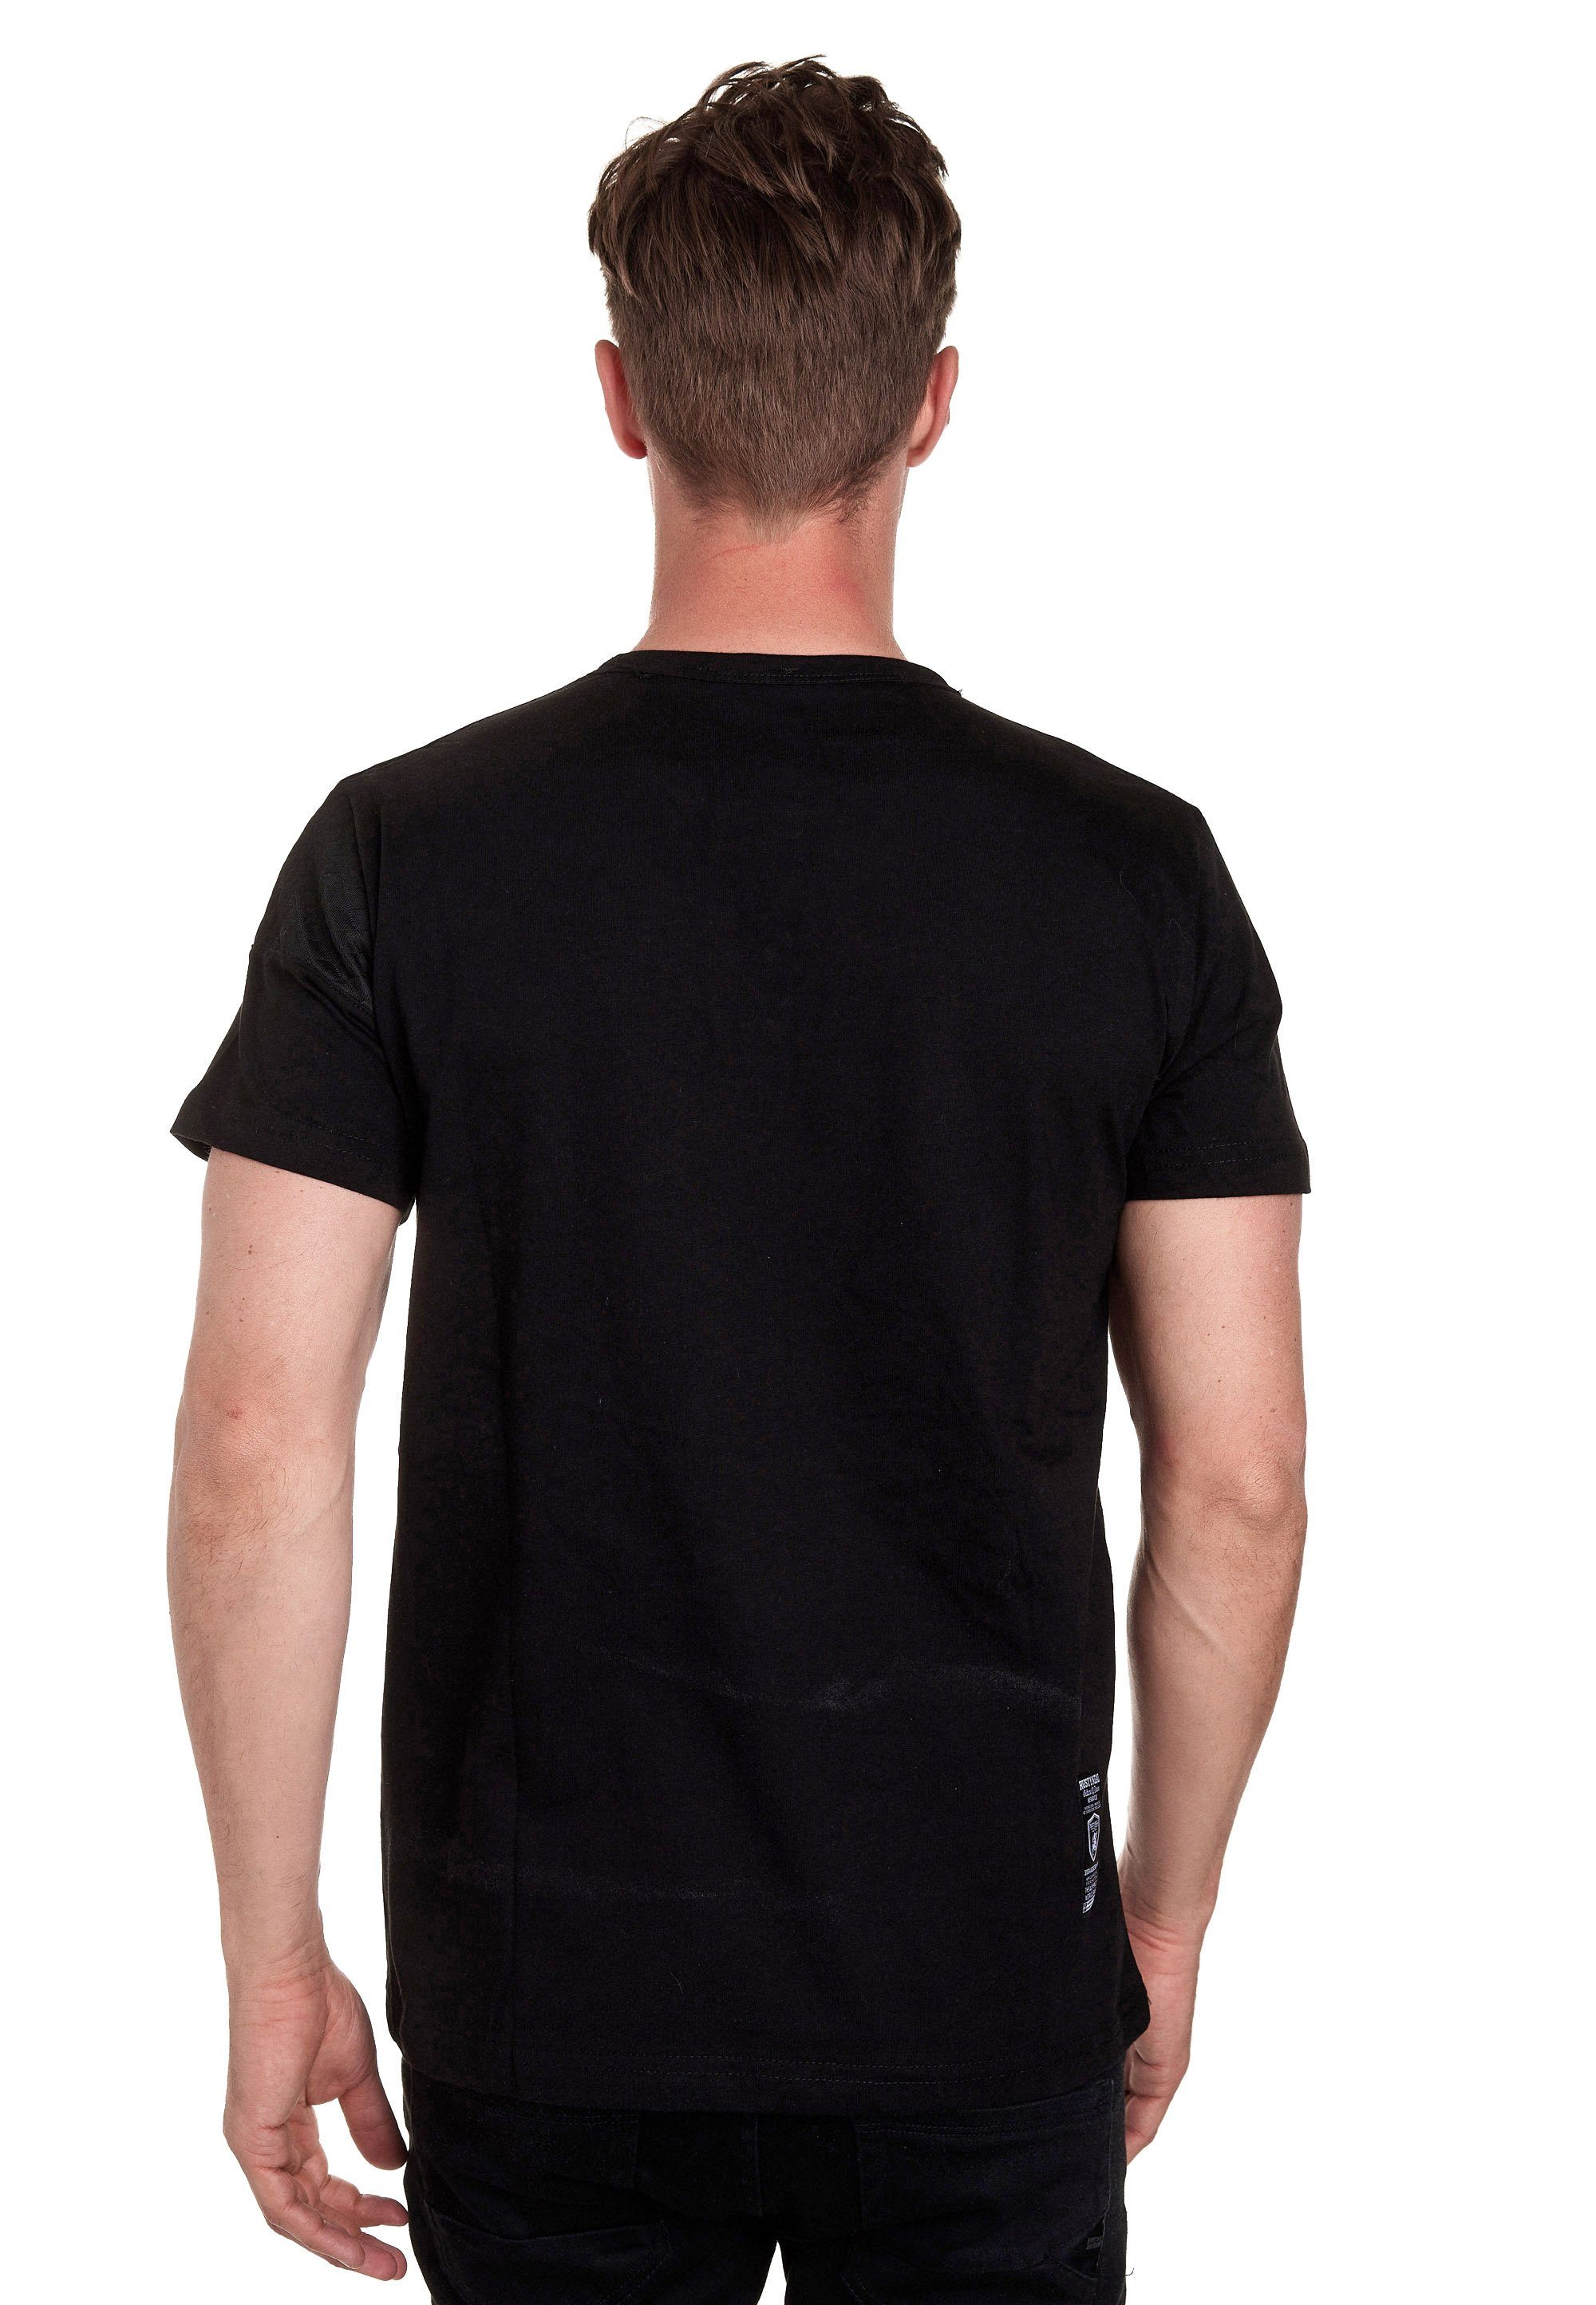 Rusty Neal T-Shirt mit schicker Knopfleiste schwarz